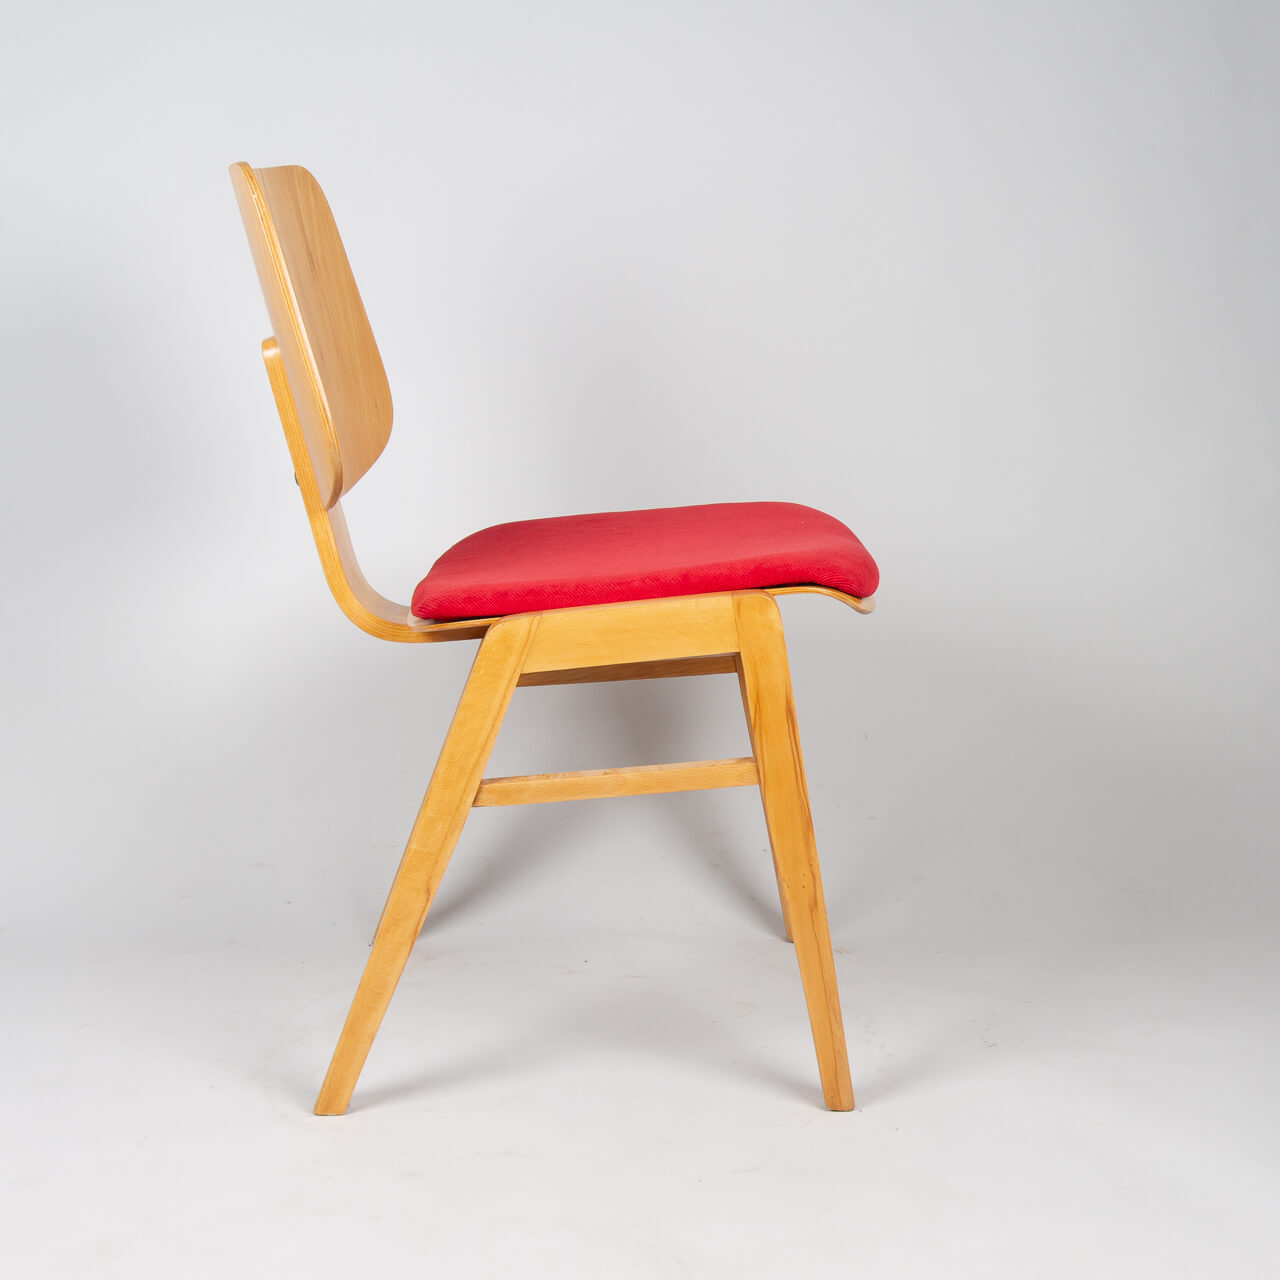 гнутоклееные сиденья для стульев